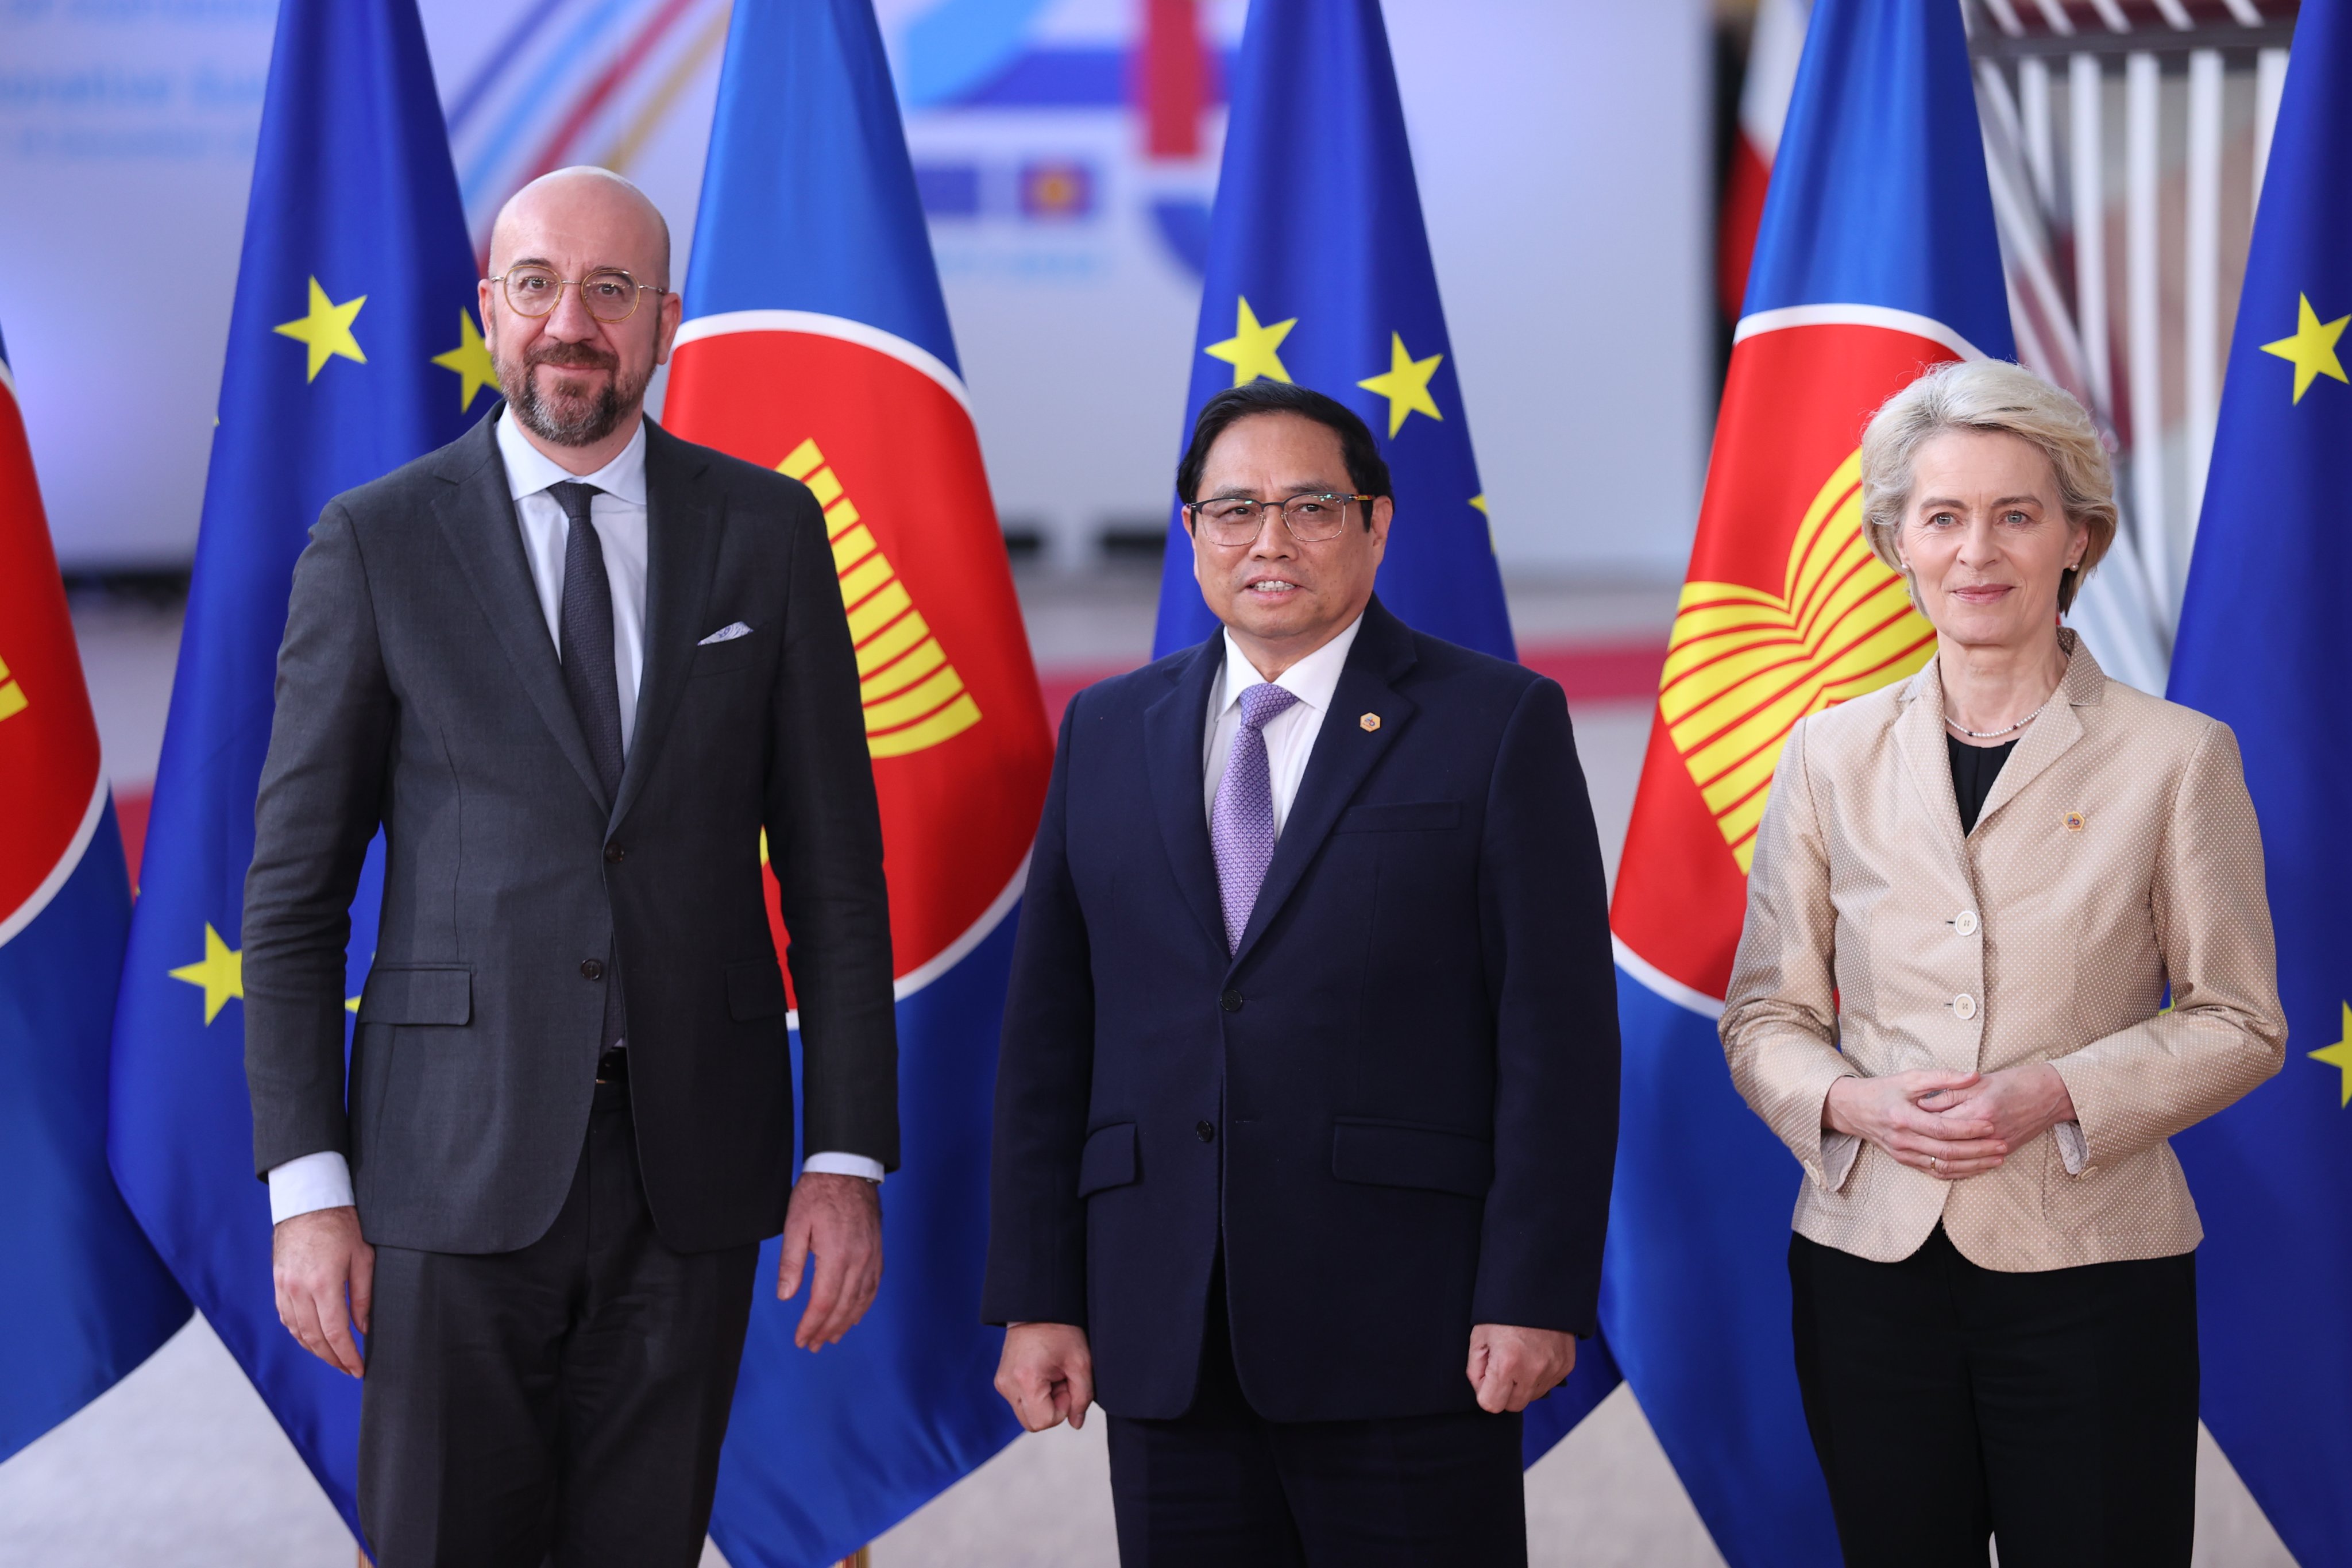 Hội nghị ASEAN-EU đã kết thúc với những kết quả tích cực về việc thúc đẩy hợp tác giữa hai khu vực và mở ra cơ hội cho nhiều doanh nghiệp. Năm 2024, Chính phủ Việt Nam cũng có mặt trong phiên họp này với Phó Thủ tướng Phạm Minh Chính, đại diện cho ASEAN, đã mang lại nhiều đóng góp và thành công.